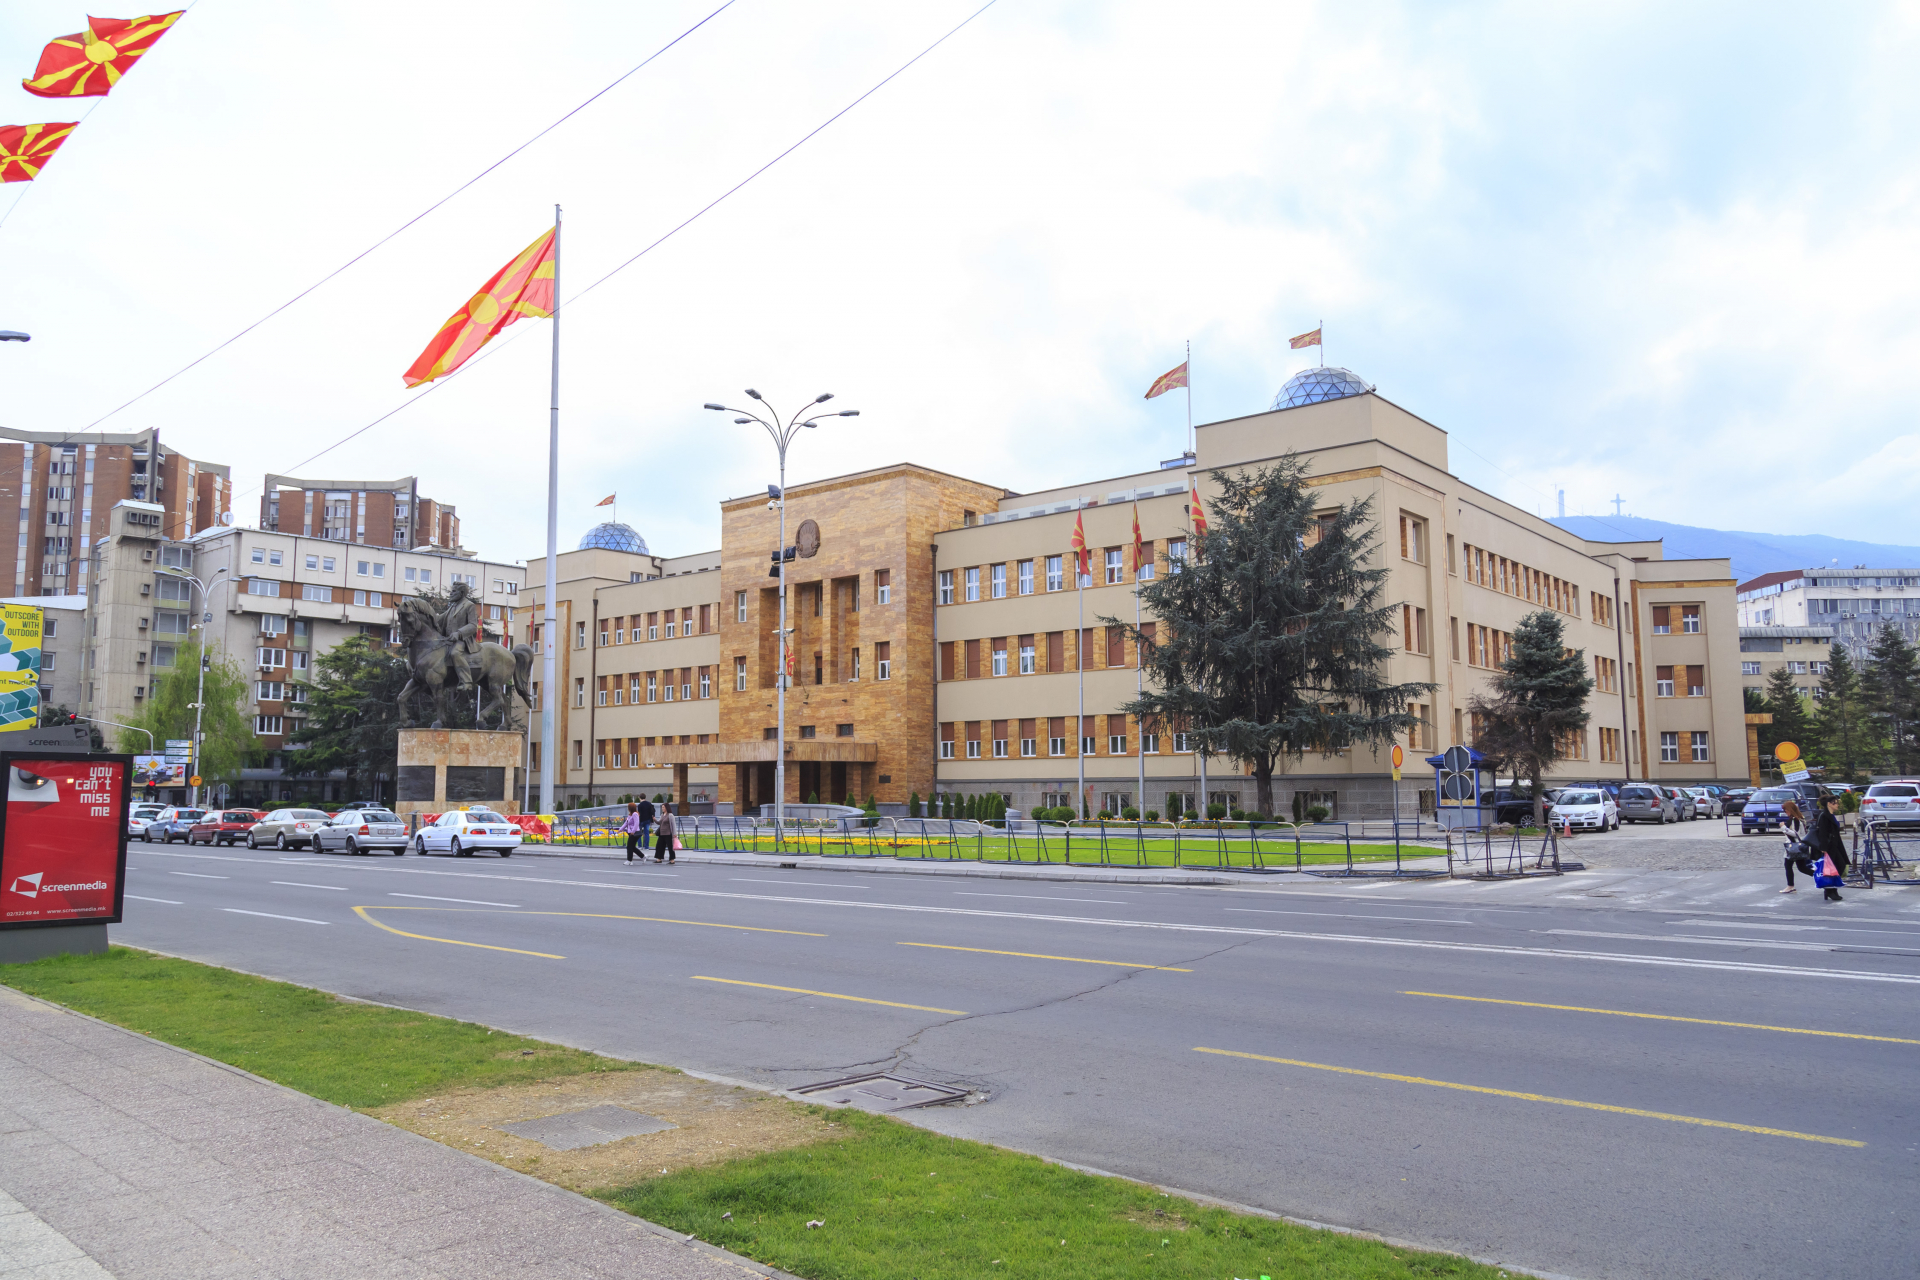 Бесен скандал в Скопие: Министър на Мицкоски се оказа с БГ паспорт